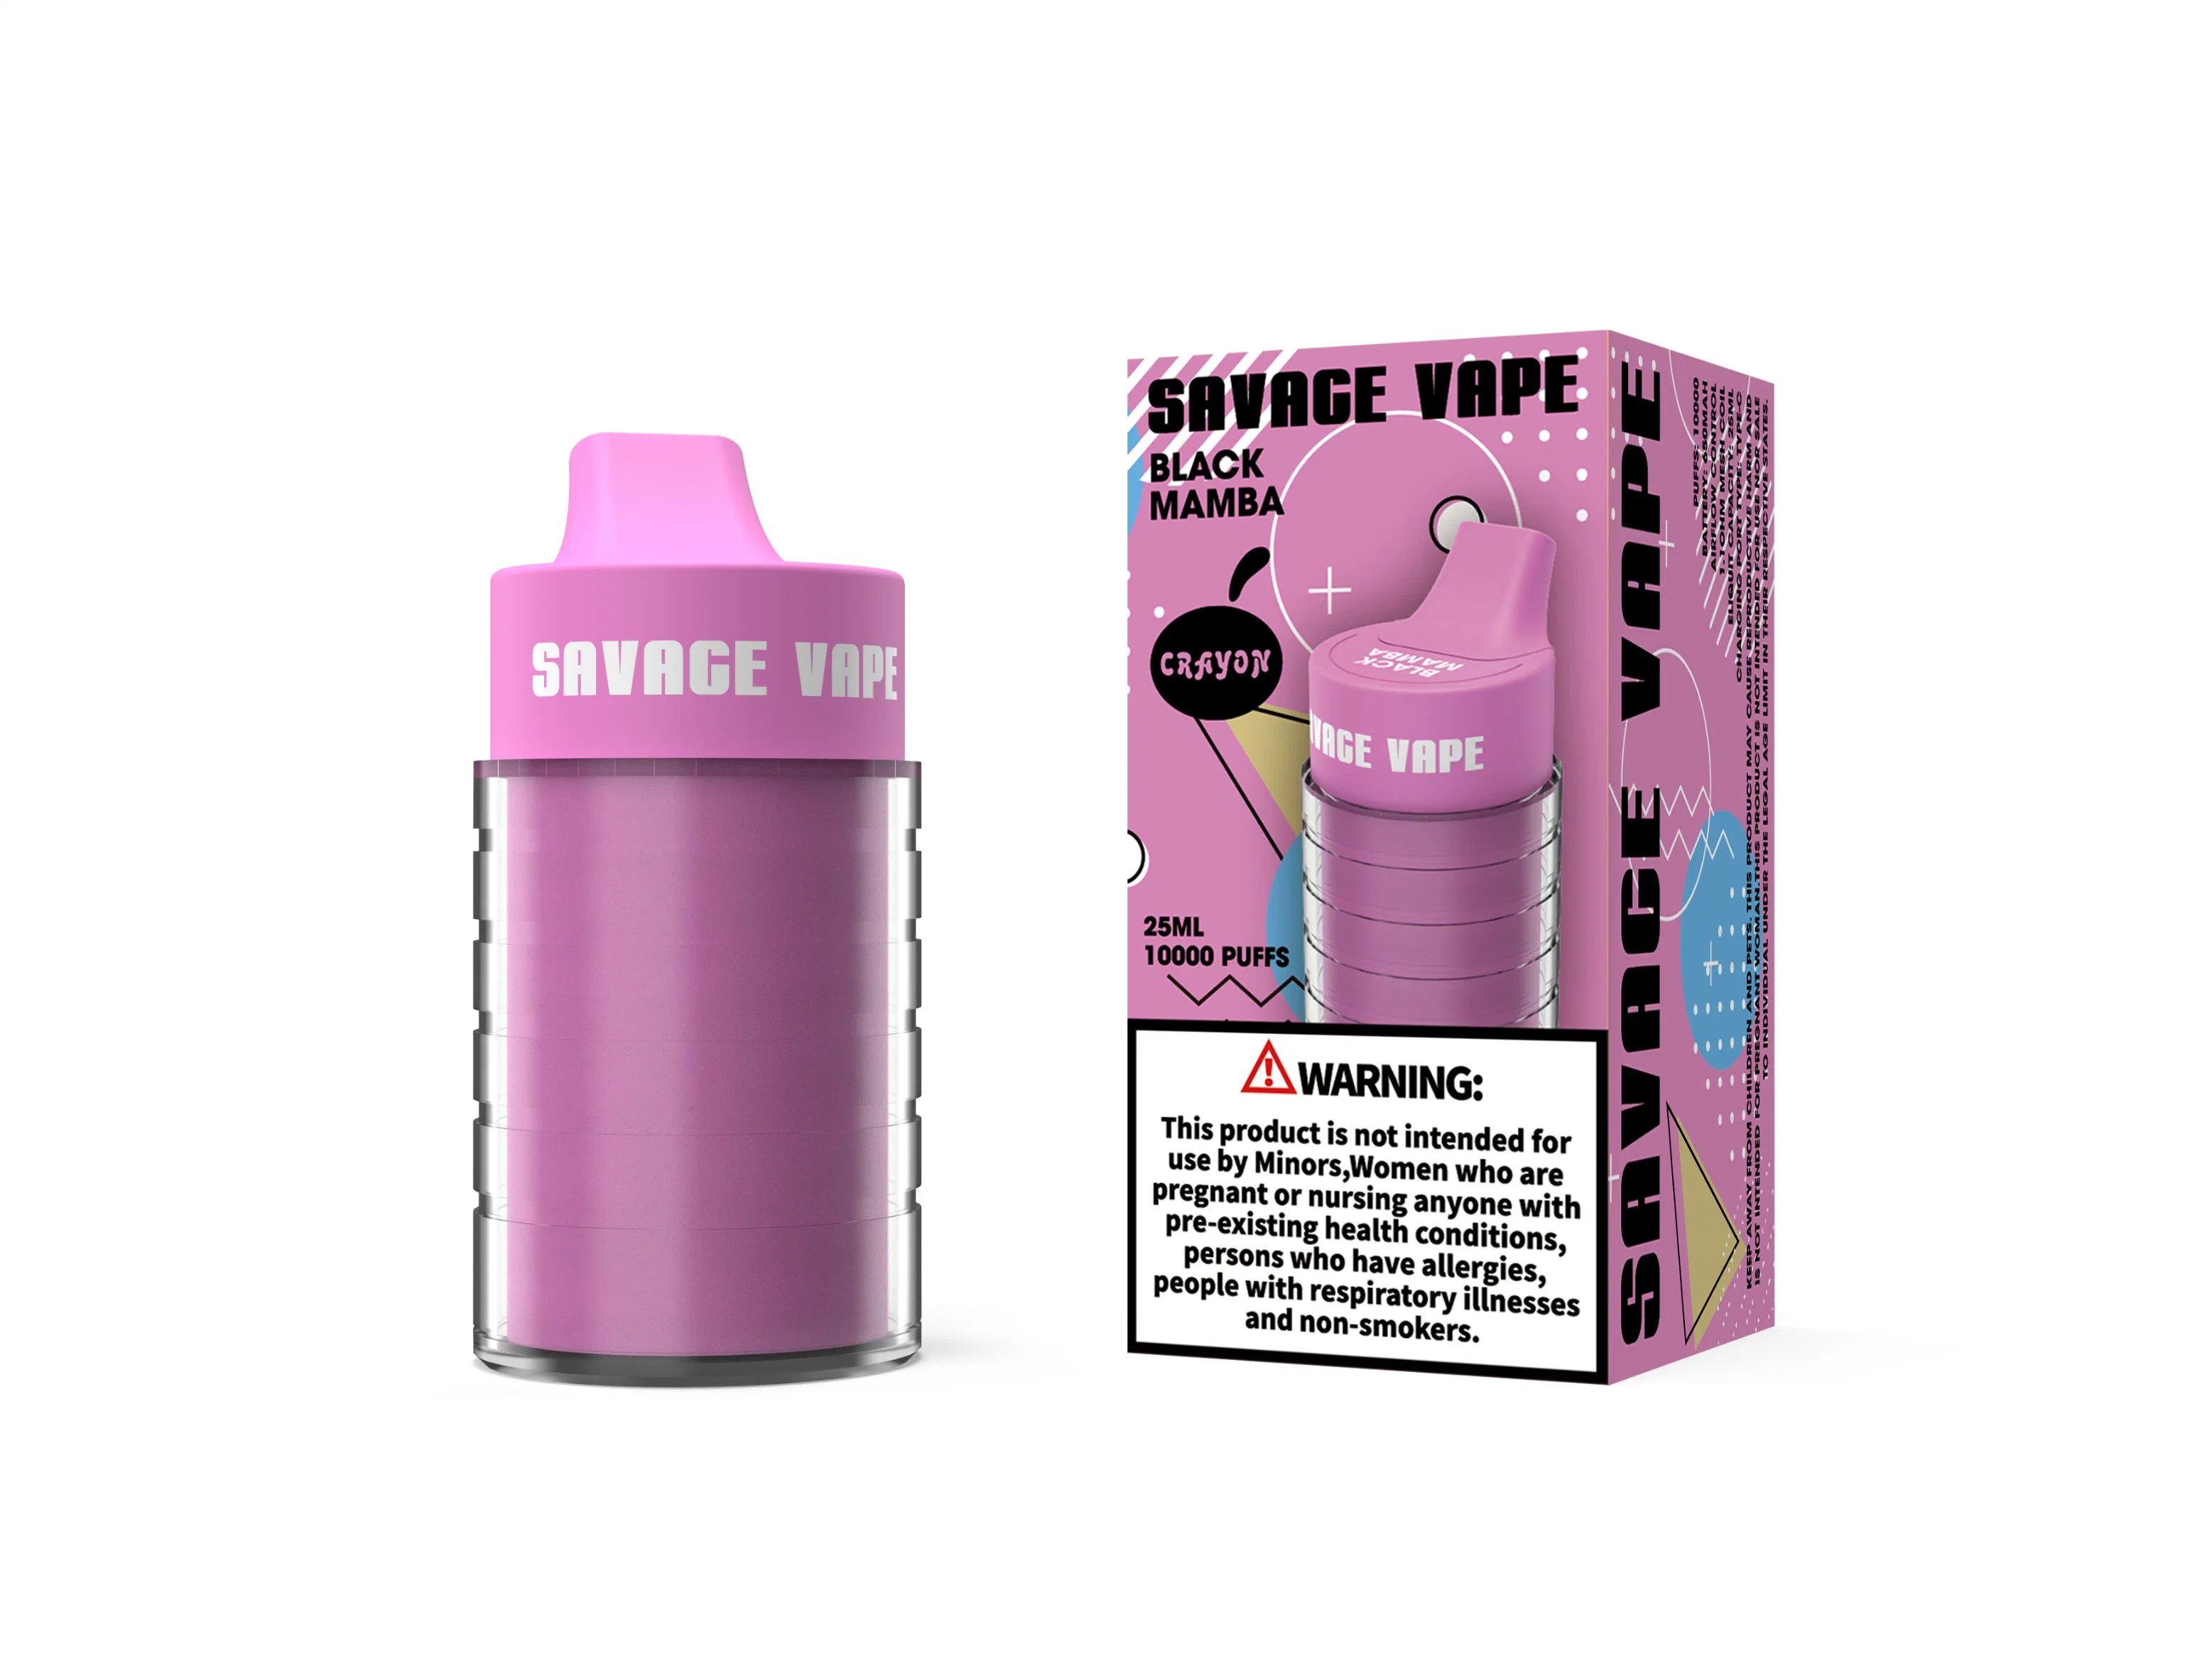 Stock disponible Savage crayon Vapes10K puffs E cigarette Disposable Vape Flacon de 6000 Coca-Cola 8000 5% Max Cup 10K Puff VAPE